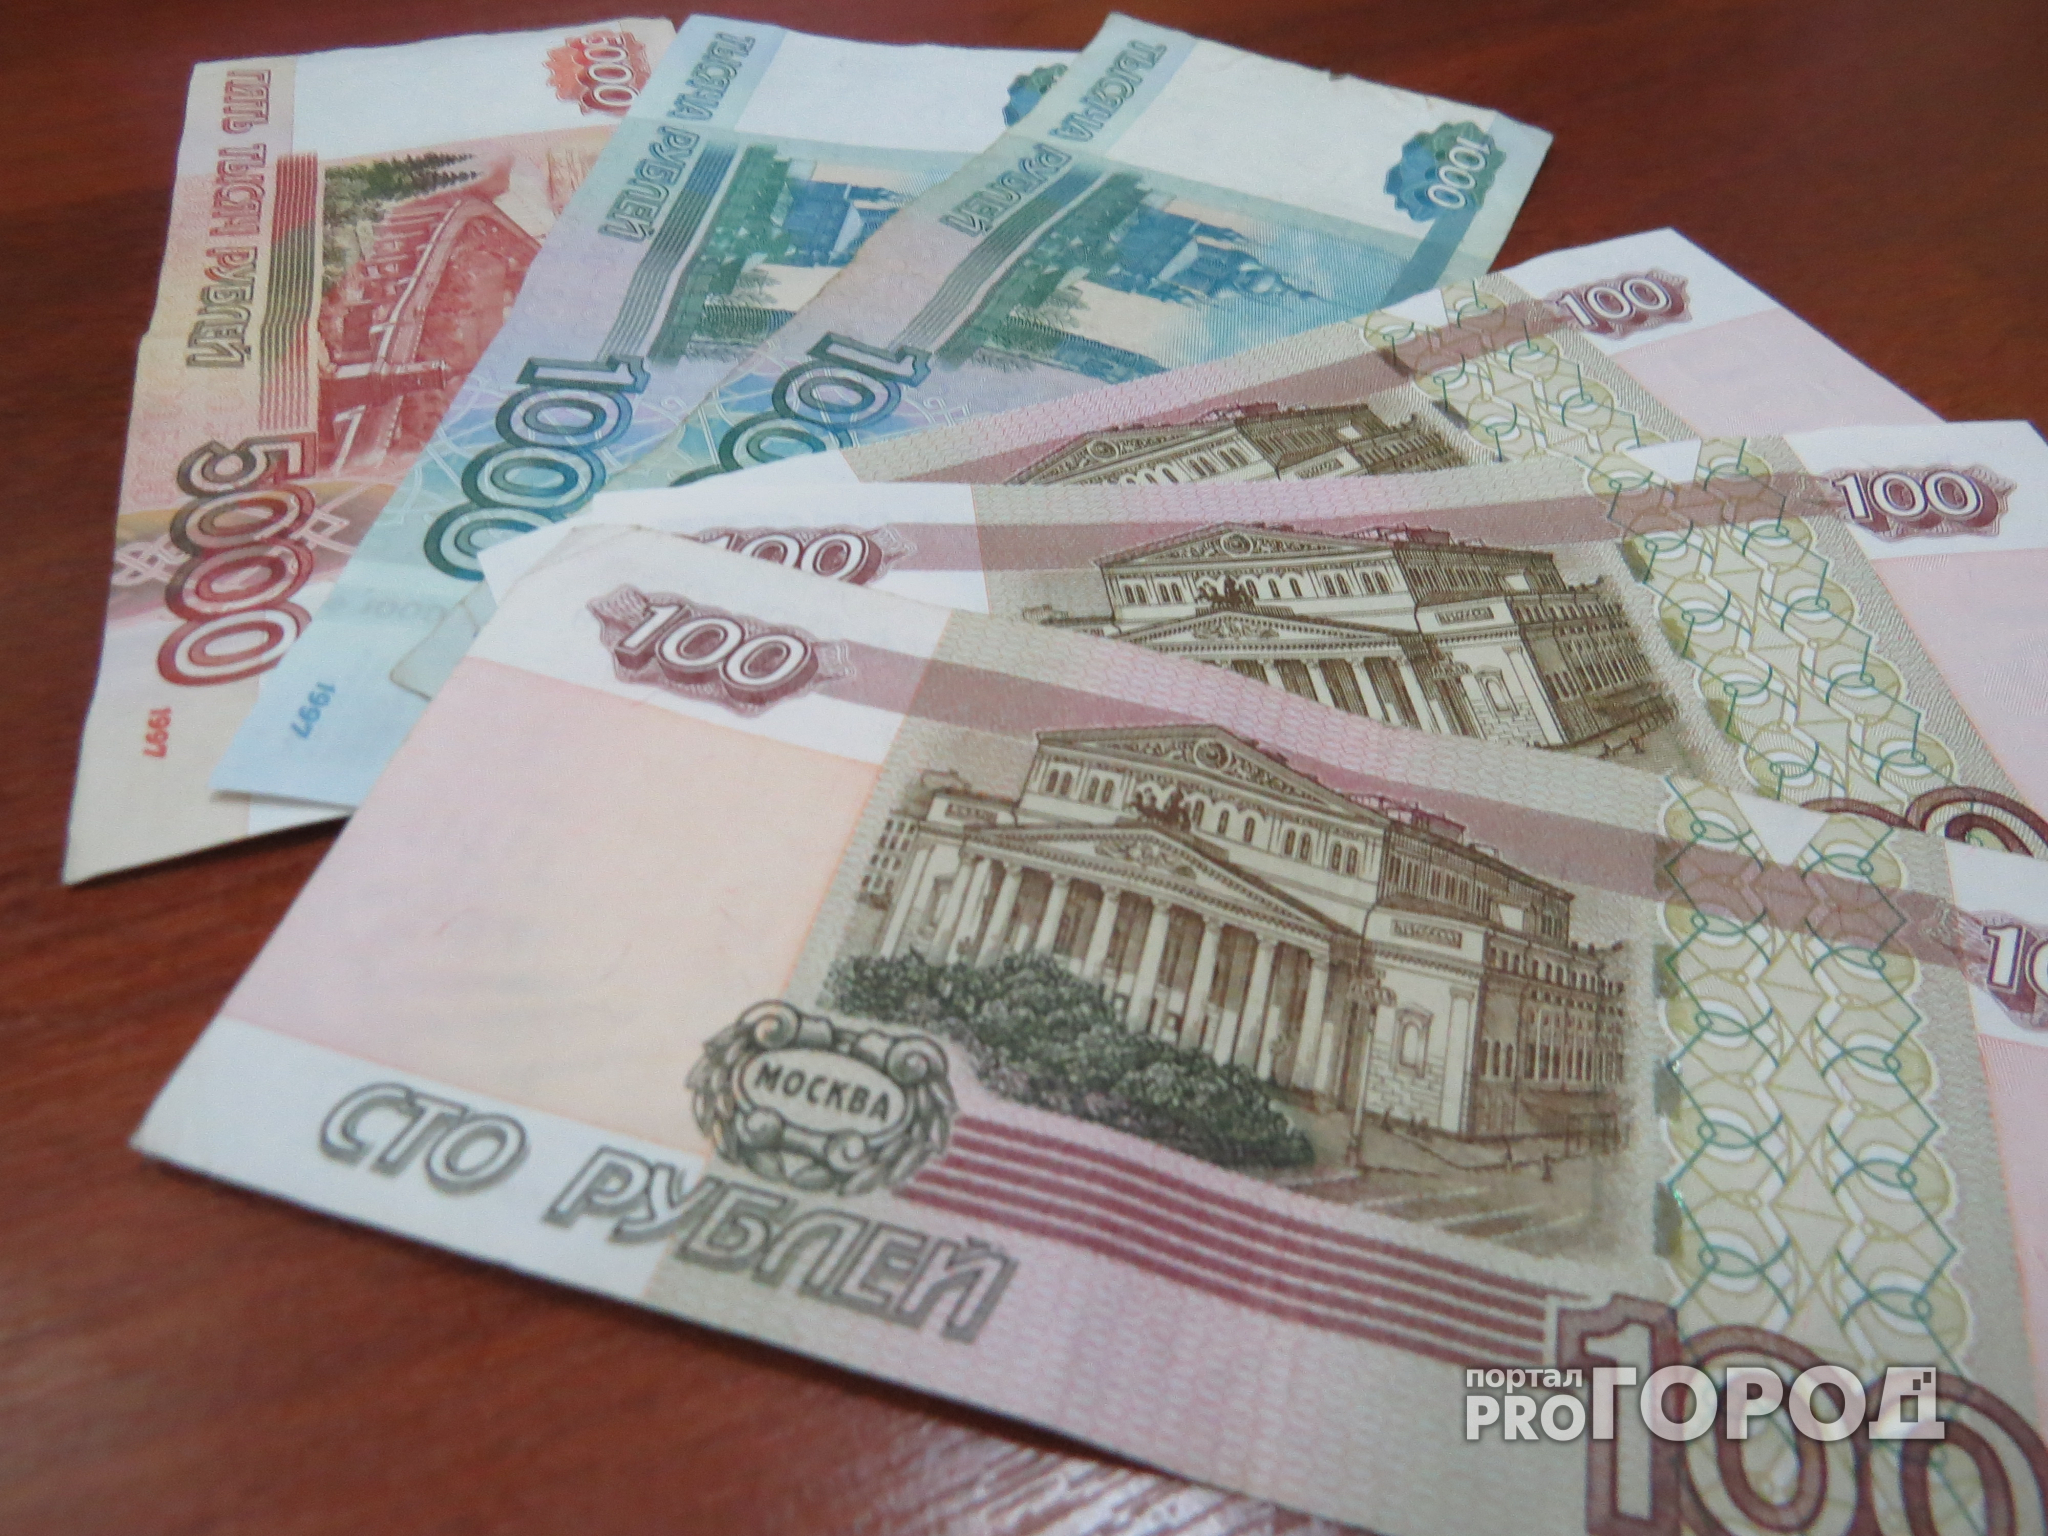 Муниципальный долг Нижнего составляет уже 8 миллиардов рублей